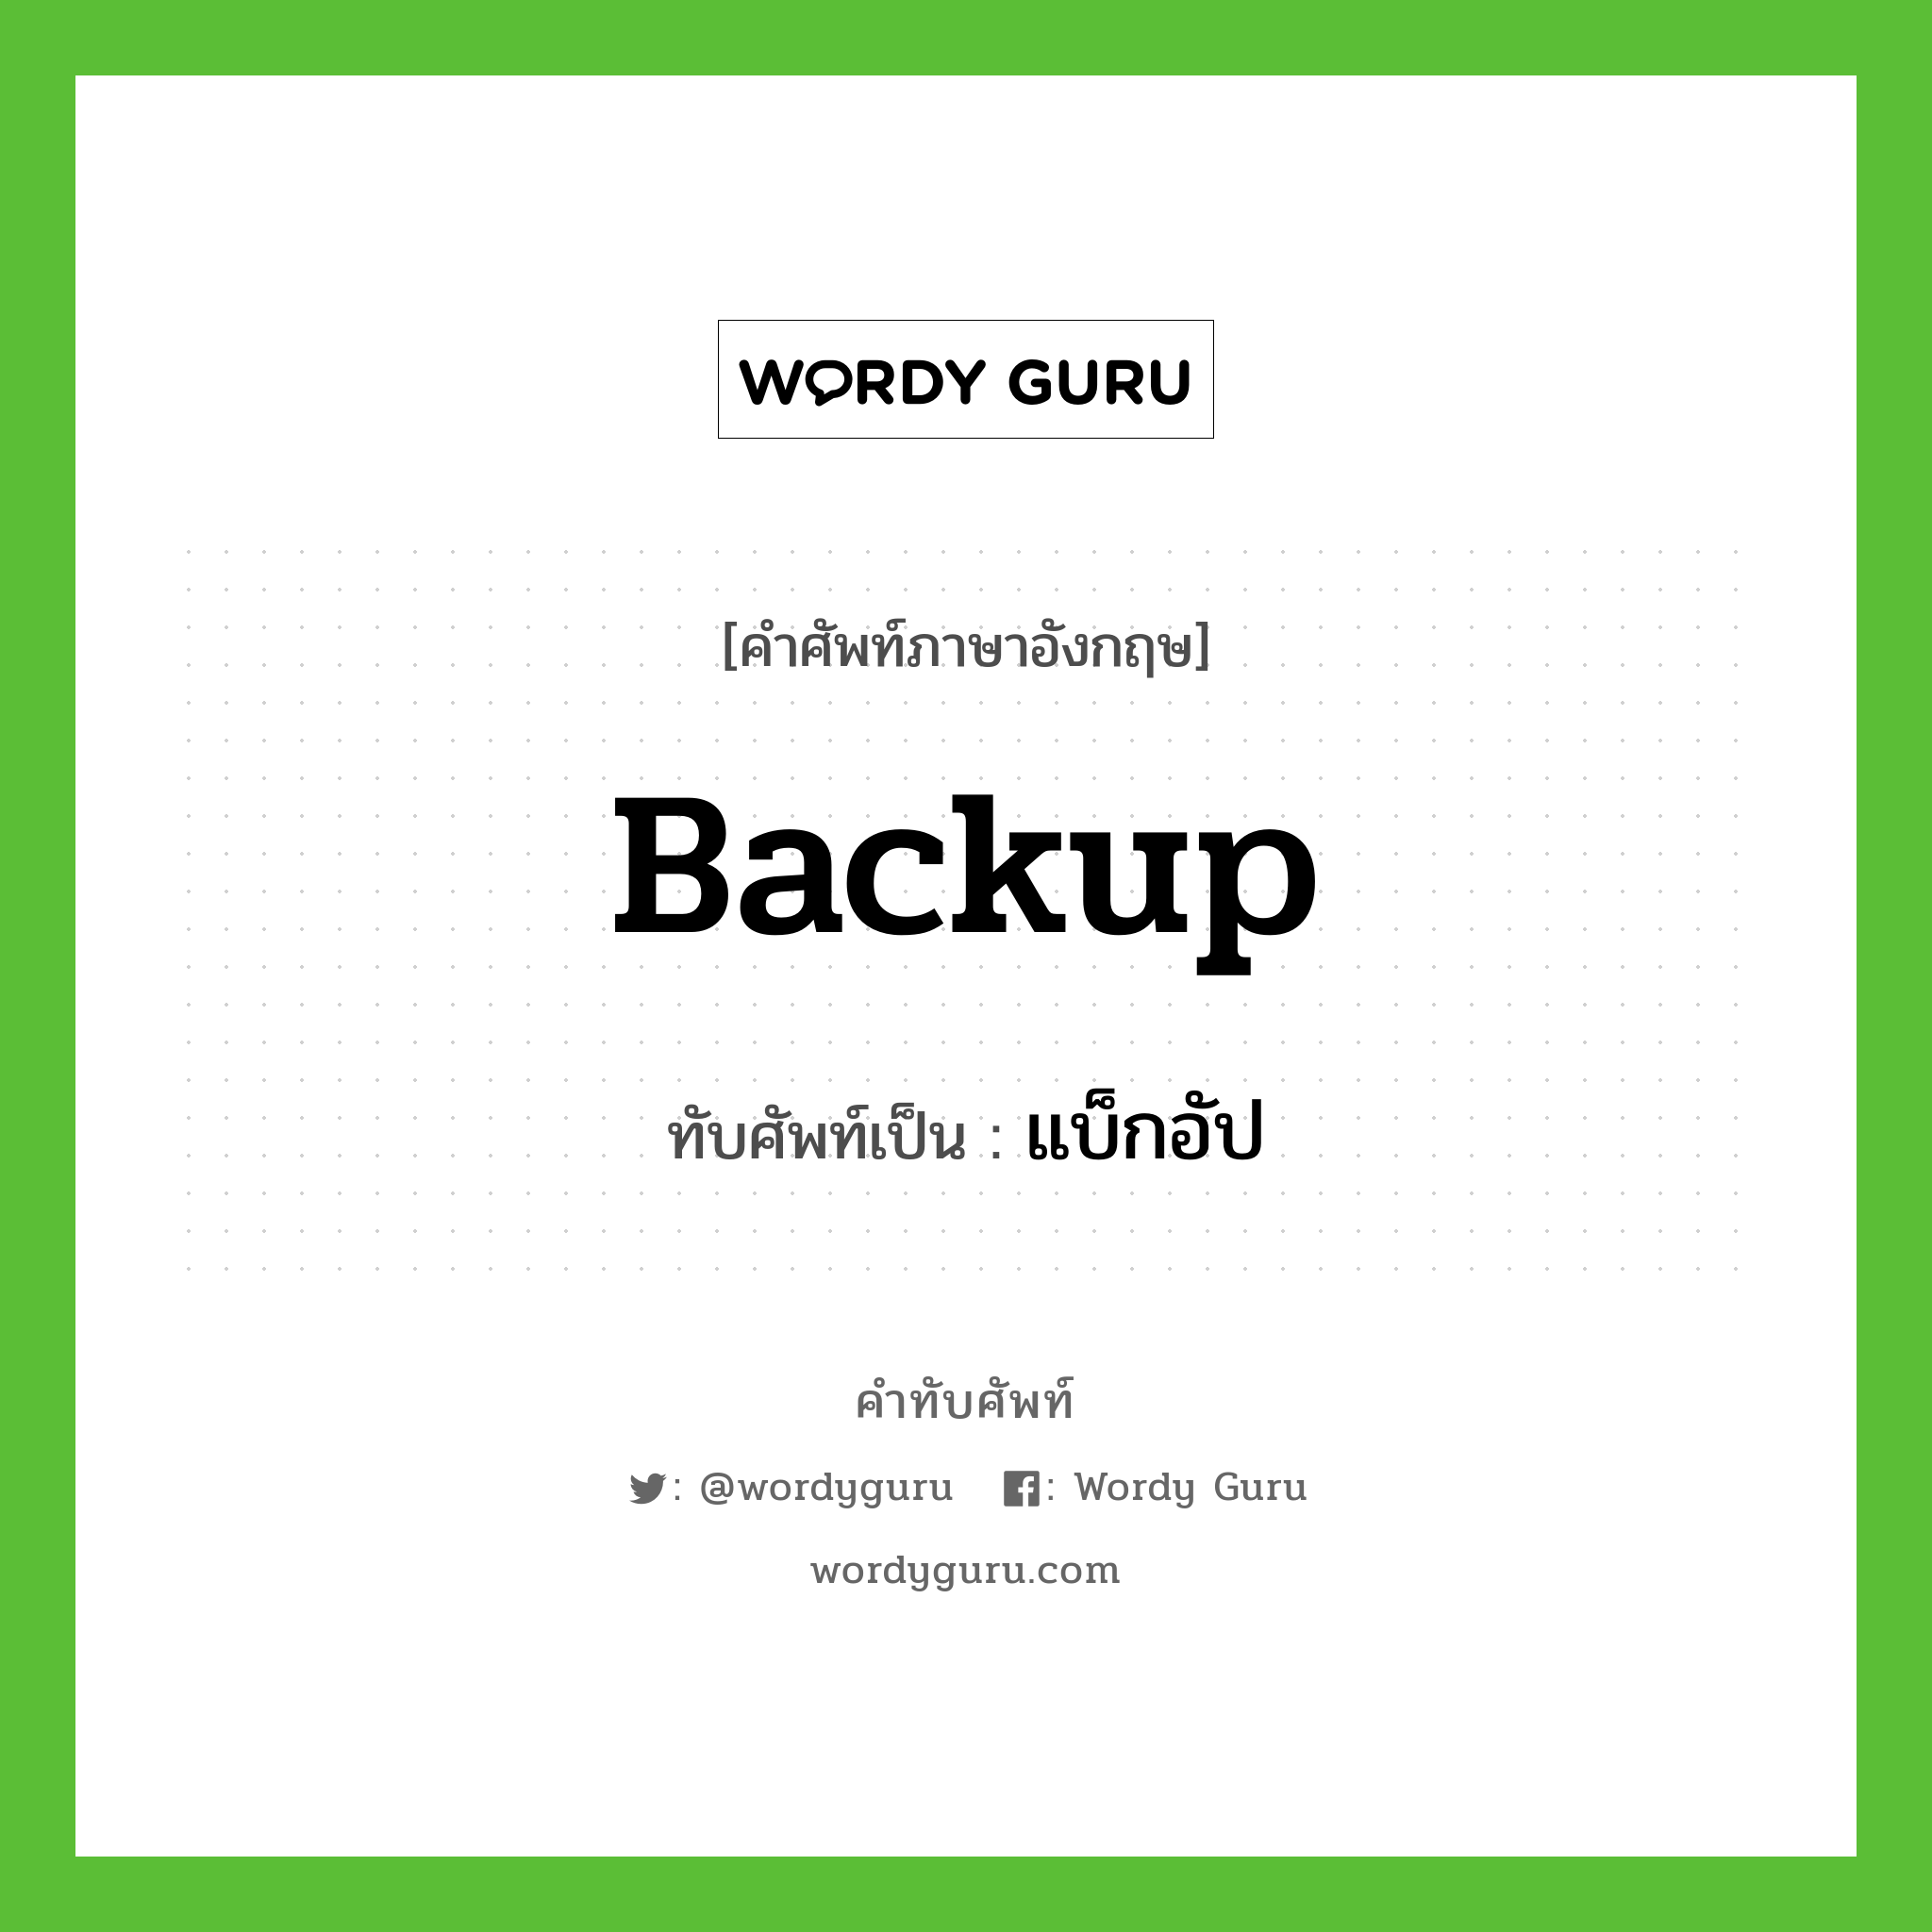 backup เขียนเป็นคำไทยว่าอะไร?, คำศัพท์ภาษาอังกฤษ backup ทับศัพท์เป็น แบ็กอัป